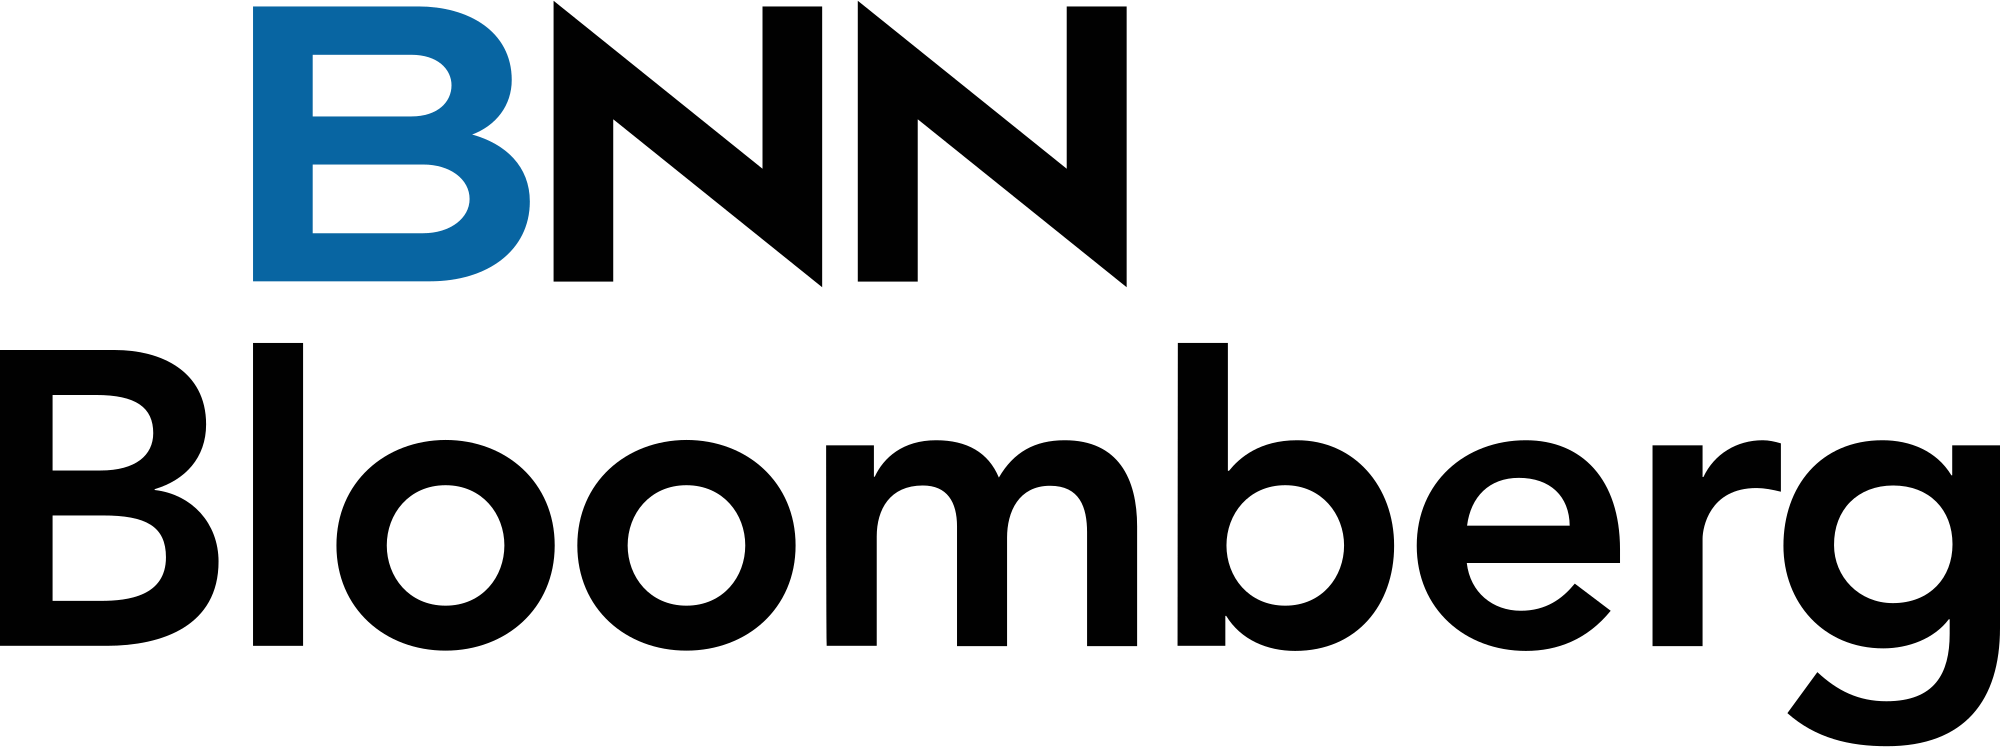 Bloomberg Logo - File:BNN Bloomberg.svg - Wikimedia Commons